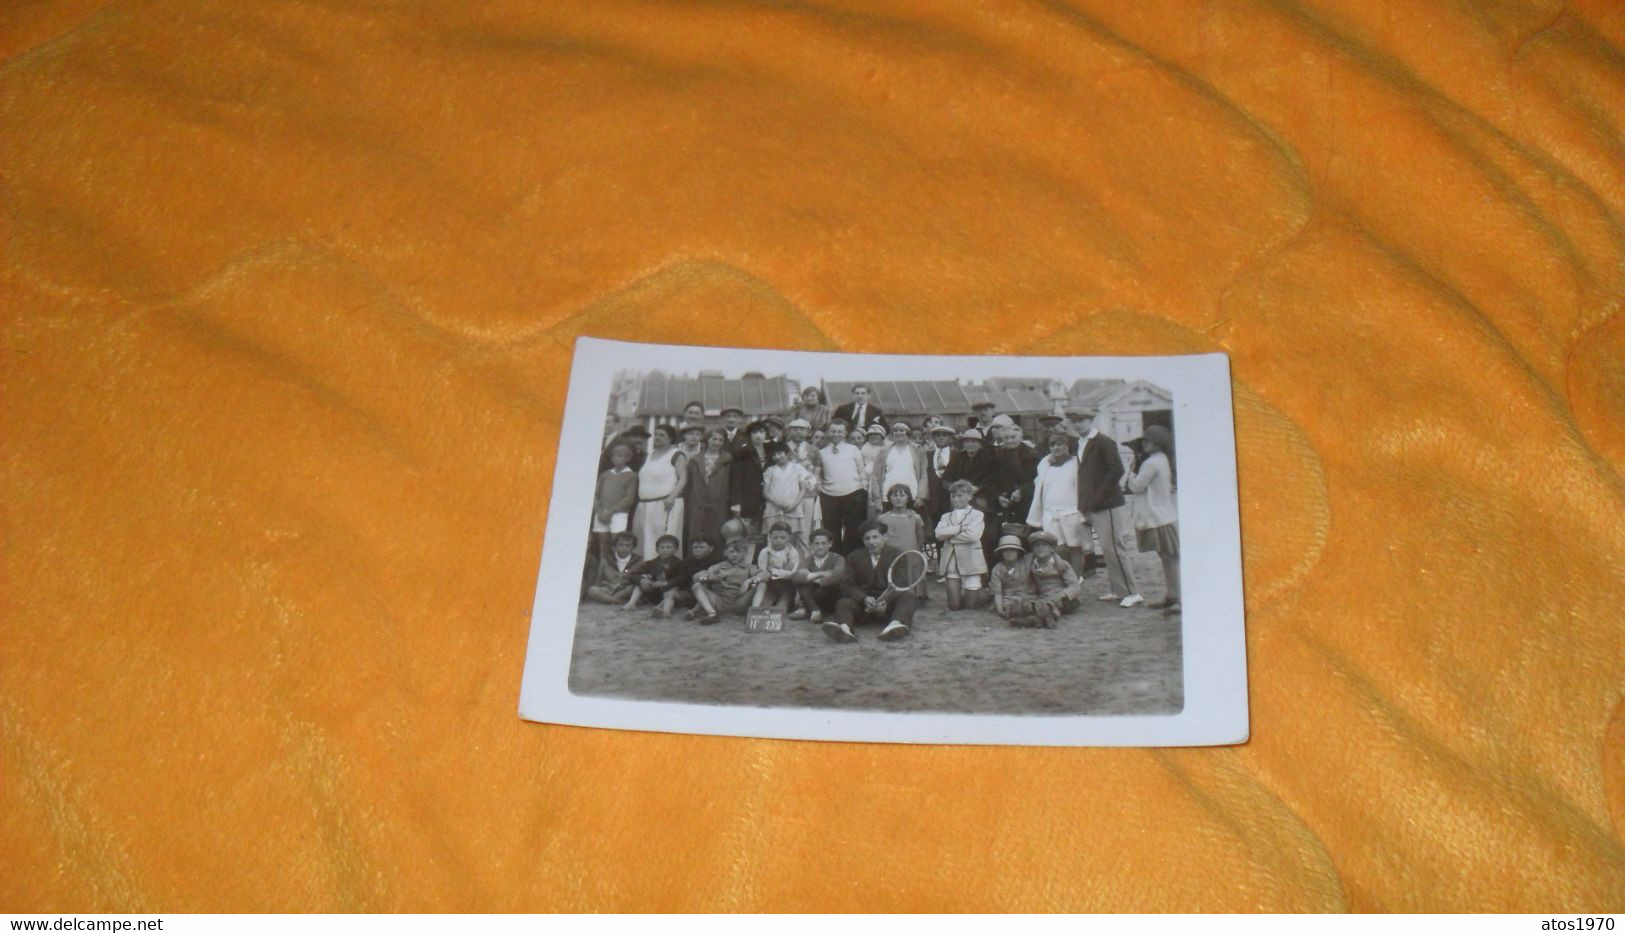 CARTE POSTALE PHOTO ANCIENNE CIRCULEE DATE ?.../ REUNION DE PERSONNES PETIT ECRITEAU AU DRAPEAU VERT - Photos